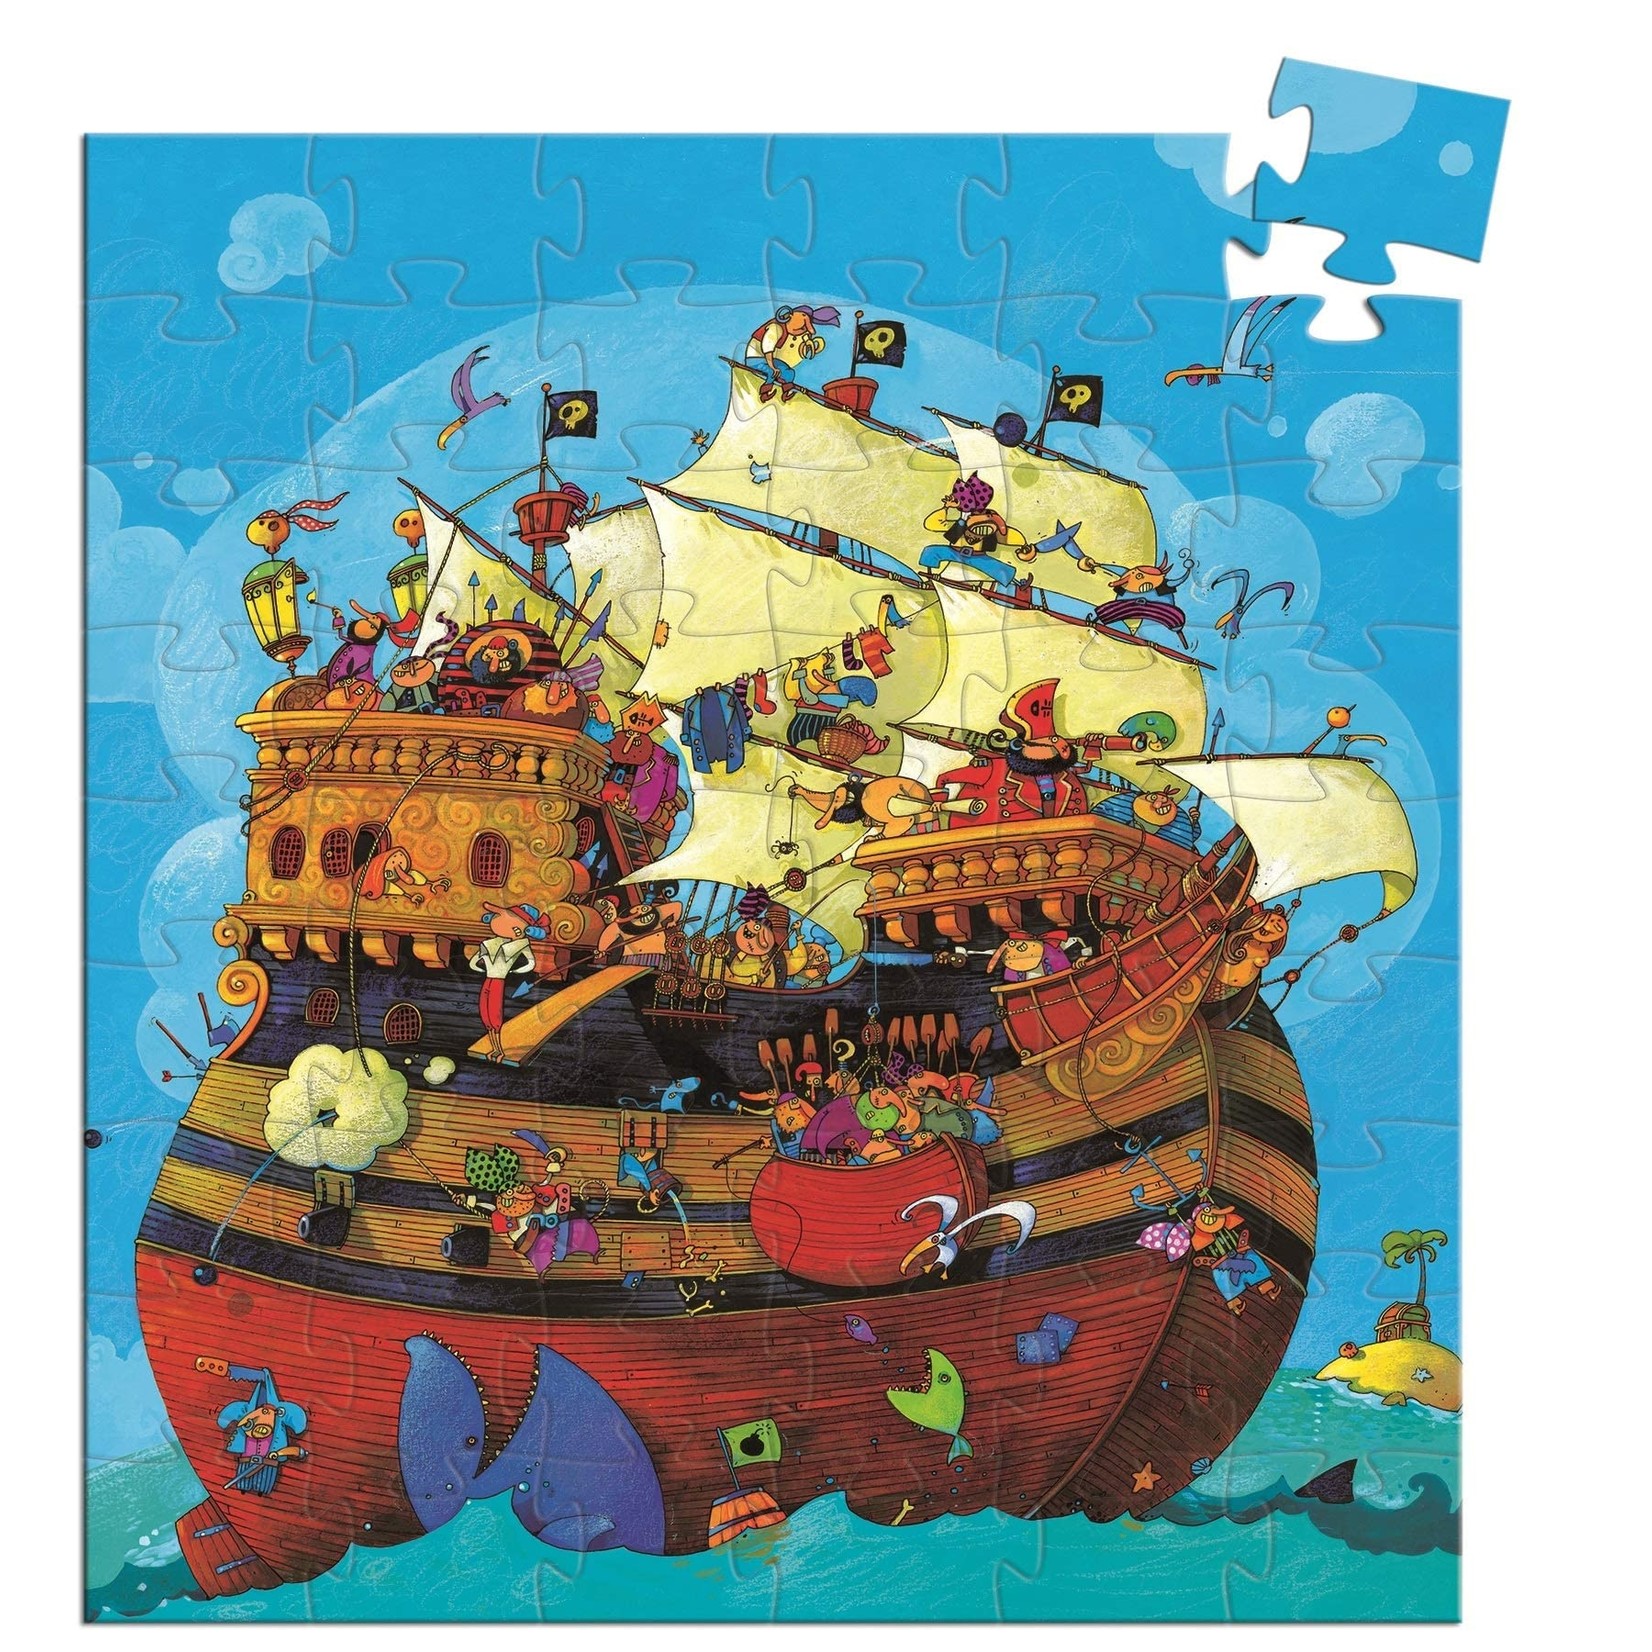 DJECO DJECO Barbarossa's Boat 54 pc Puzzle